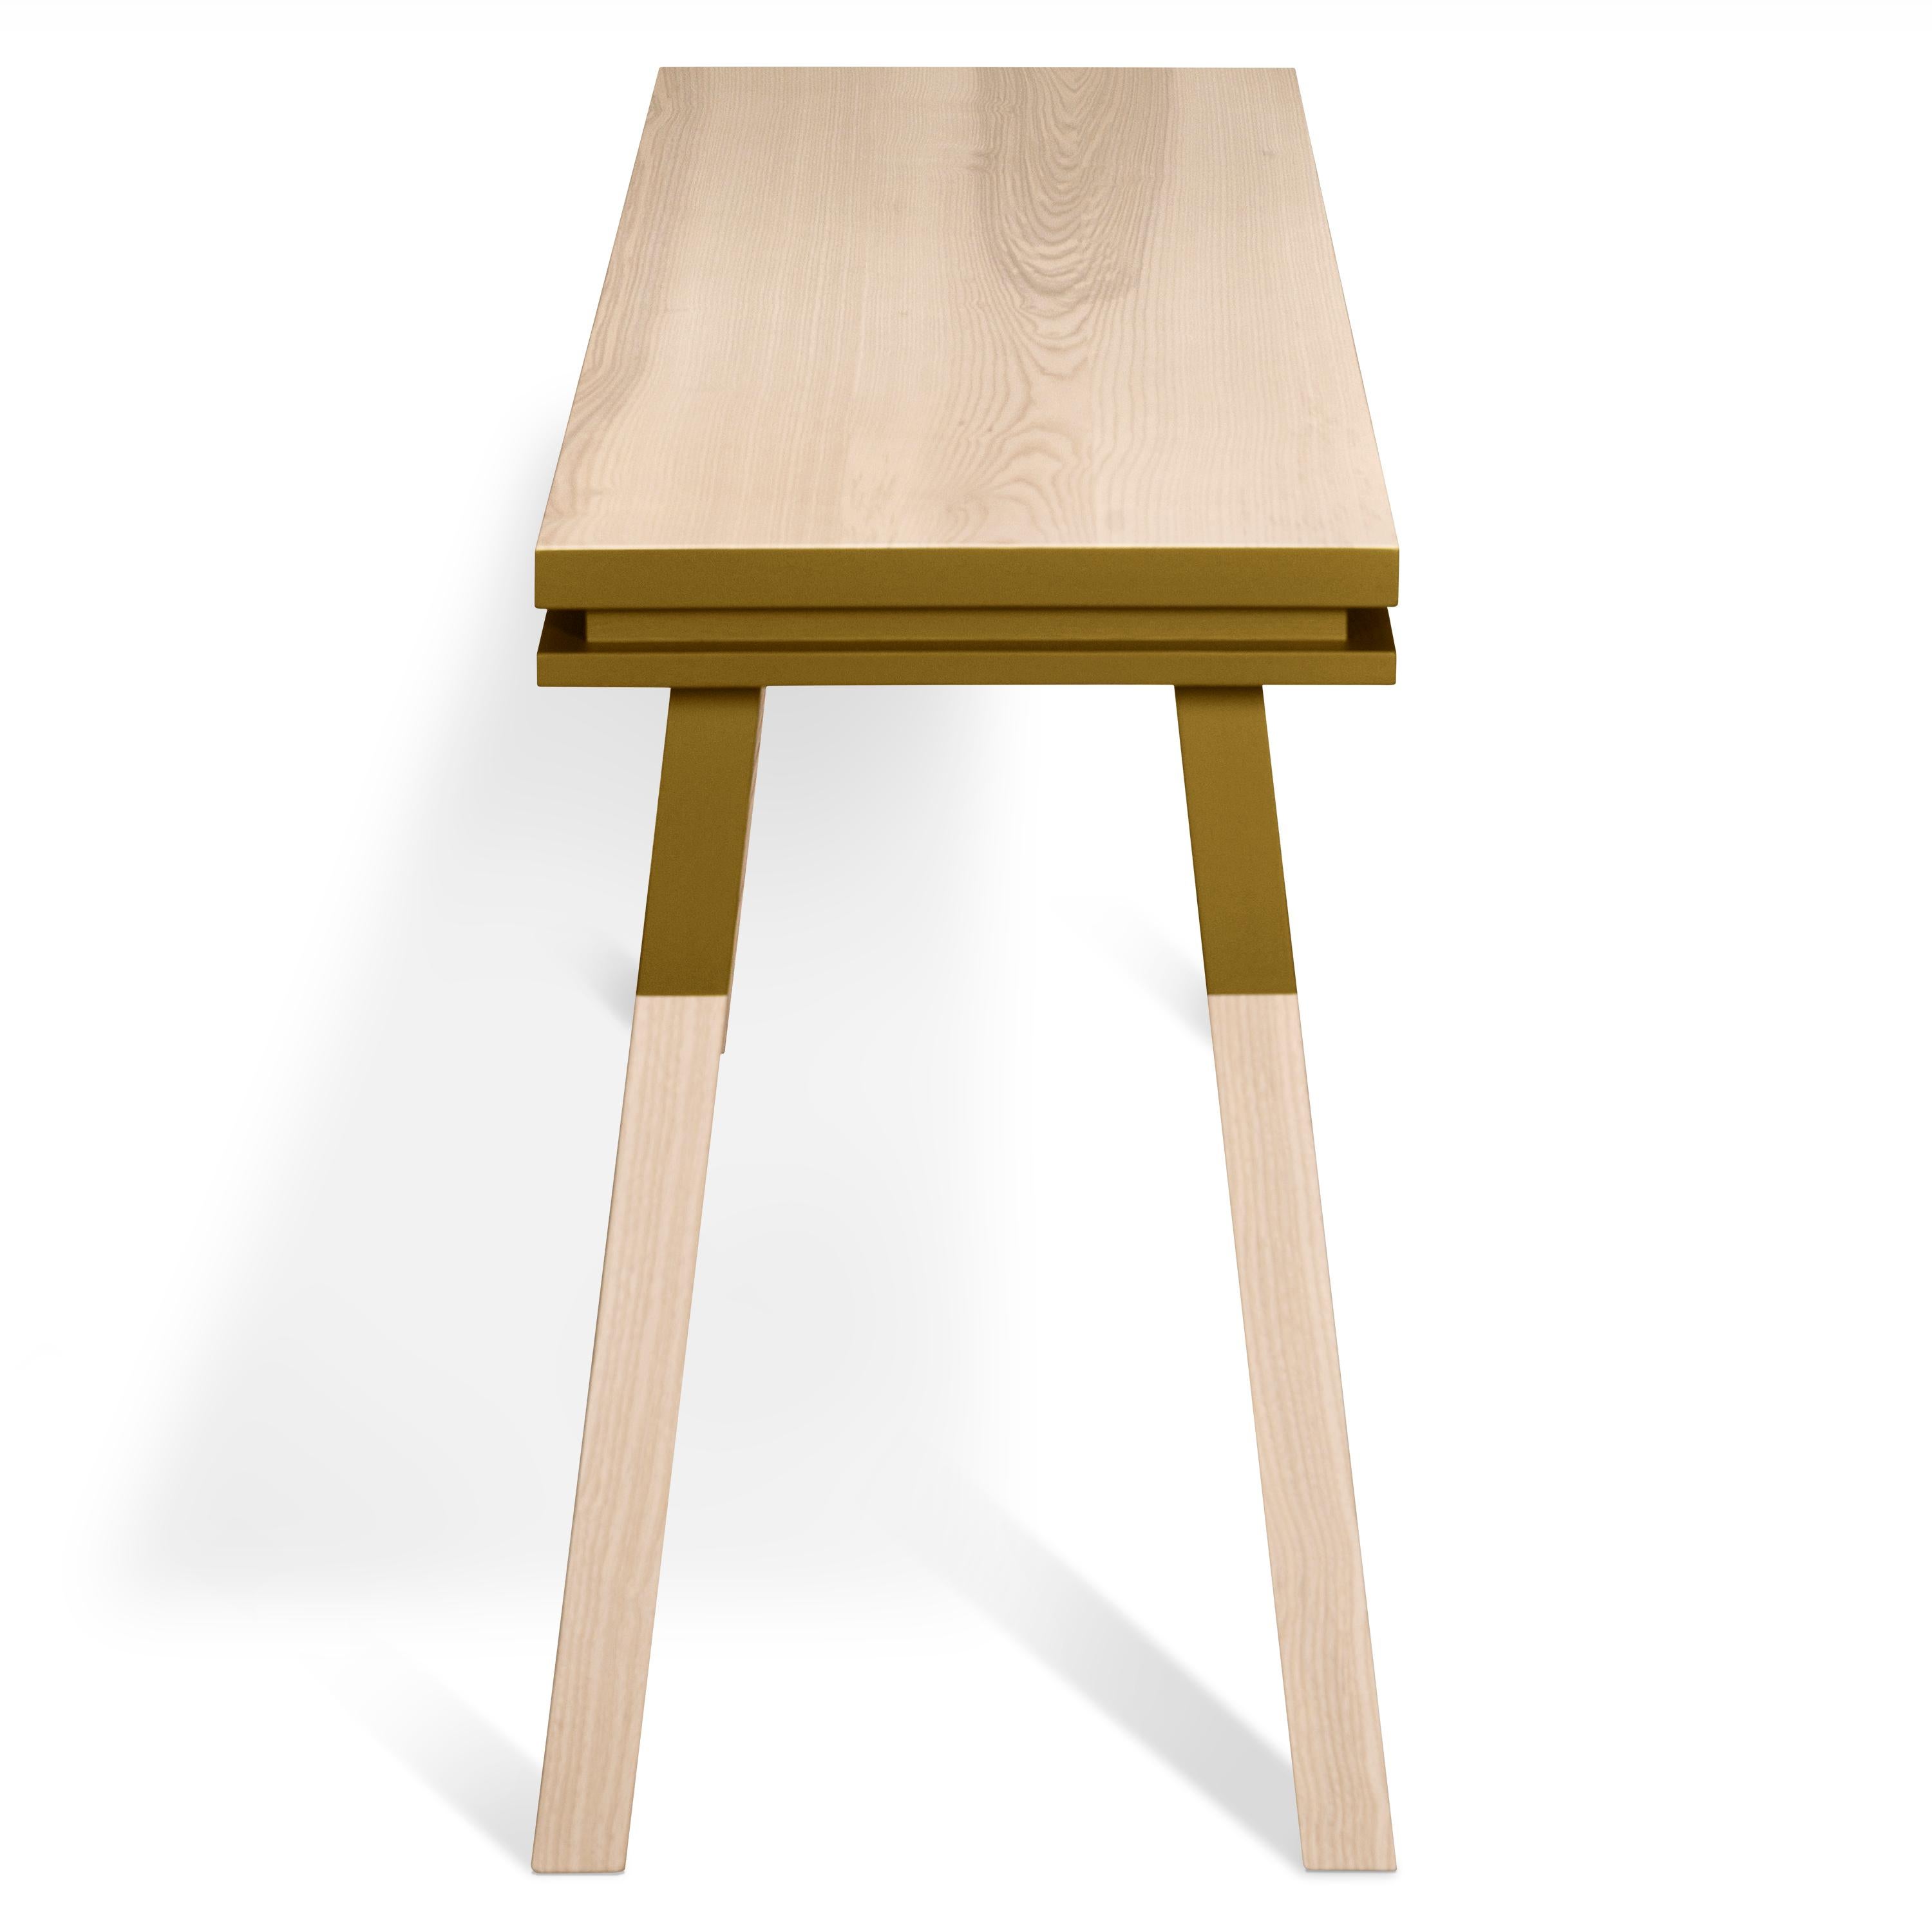 Scandinavian Modern Rectangular Desk Table, Scandinavian Design by Eric Gizard, Paris, 11 Colours For Sale